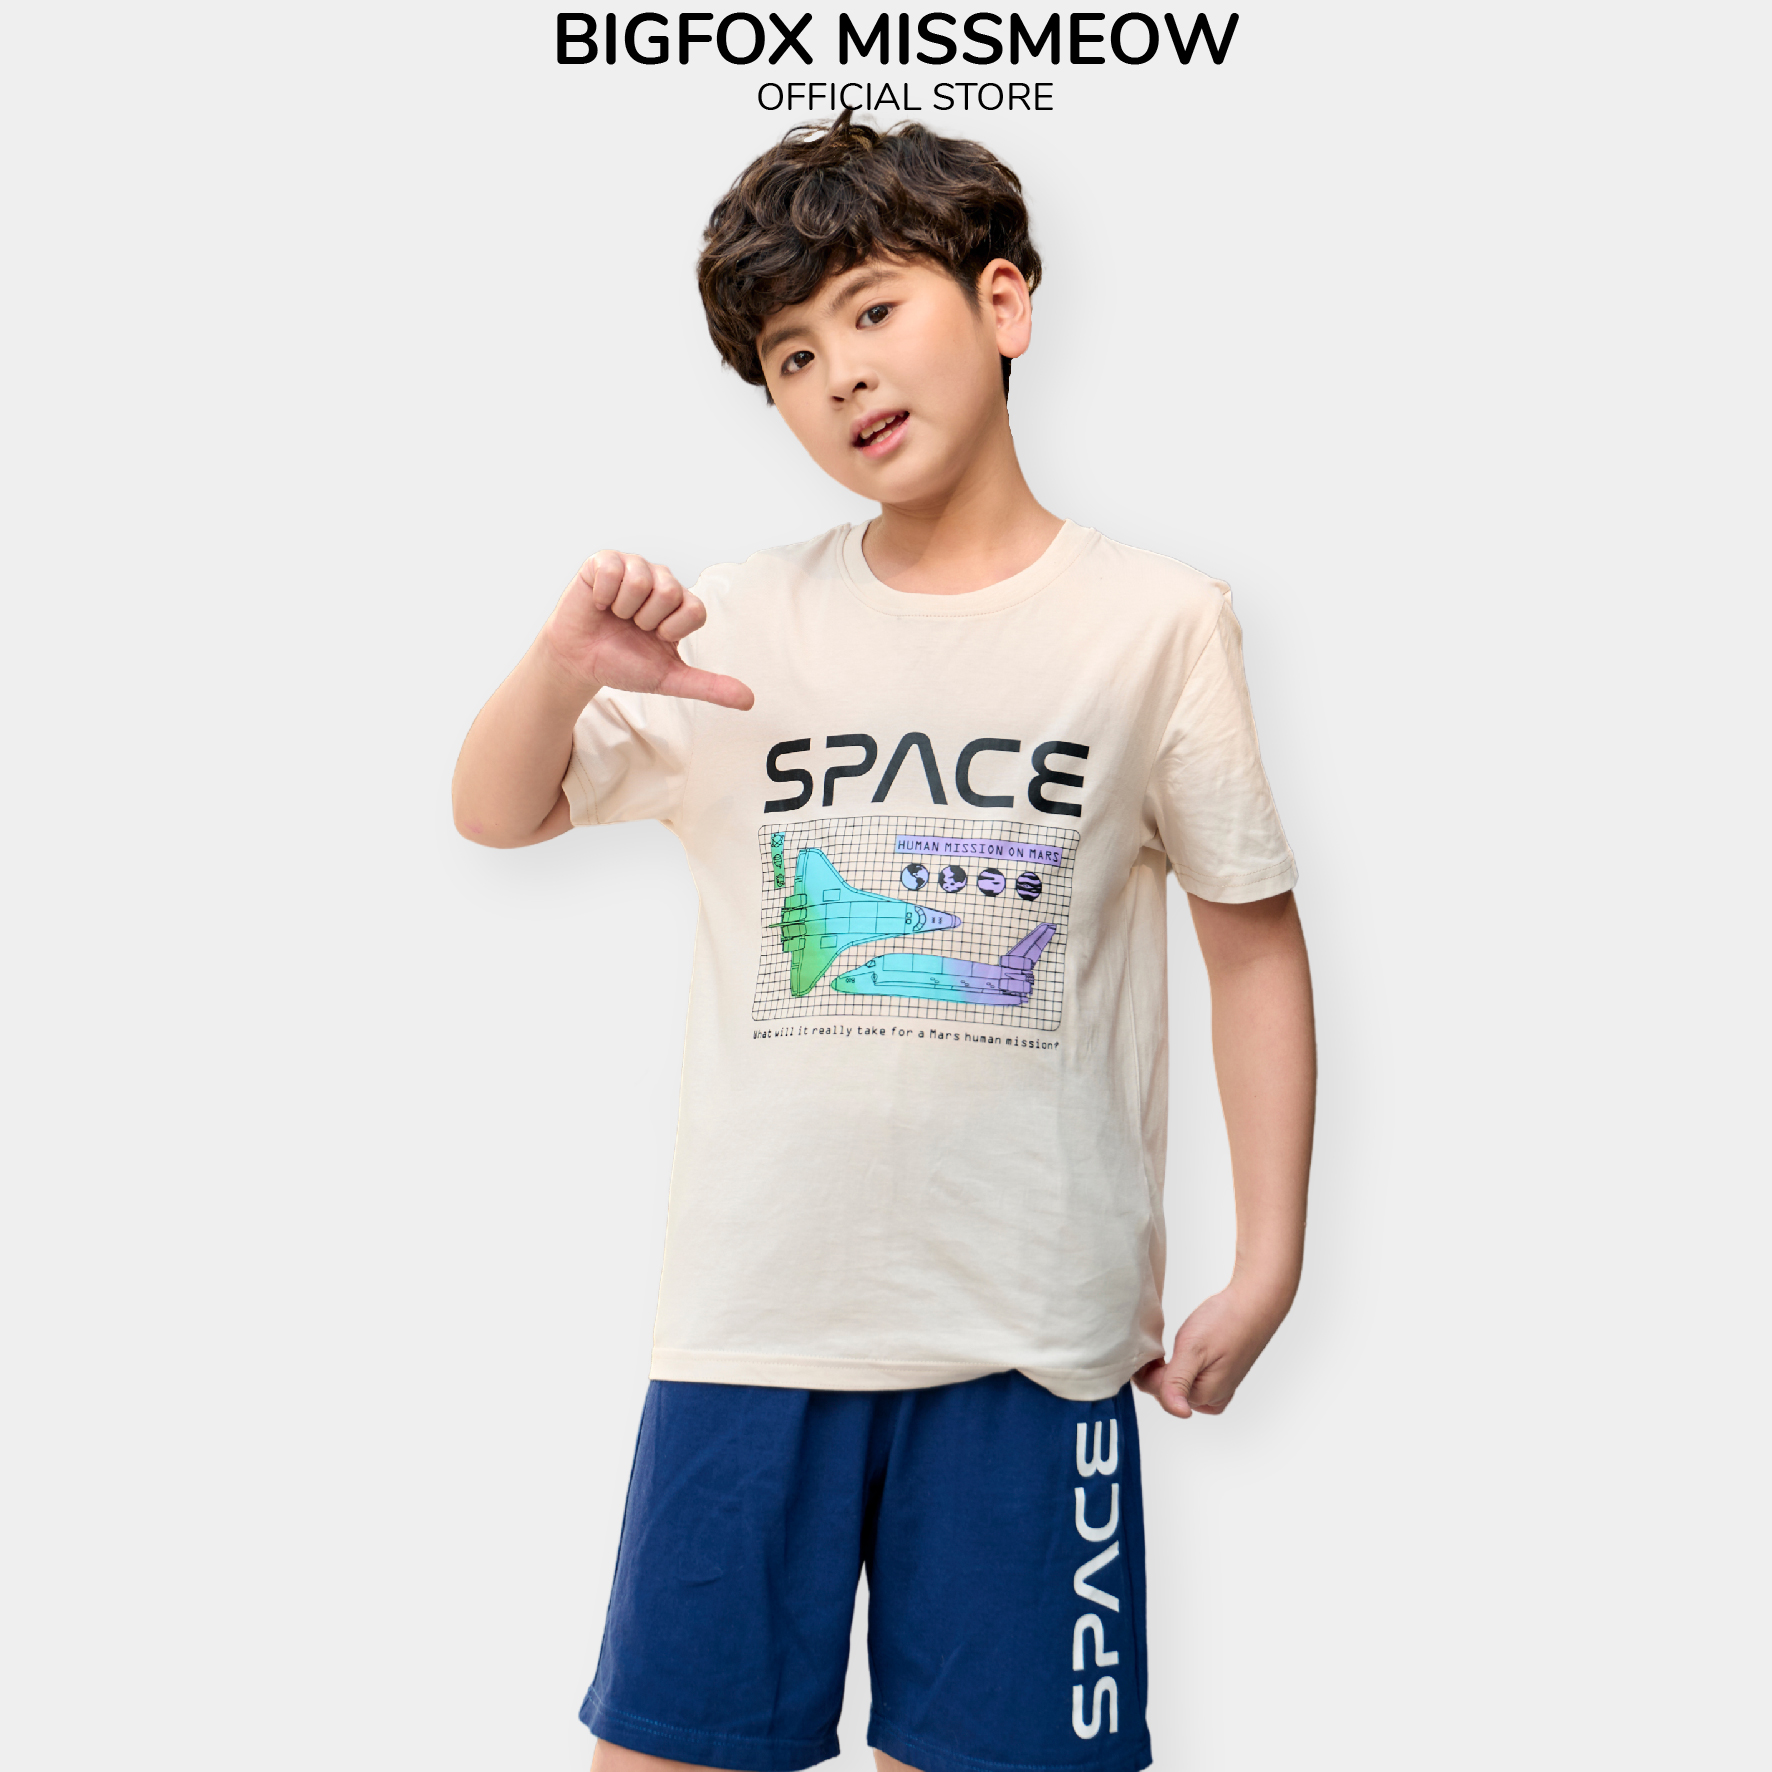 Đồ bộ cộc tay Hàn Quốc Bigfox Miss Meow cho bé trai size đại vải cotton mềm mại in Space cỡ 12-15 tuổi 40kg 50kg